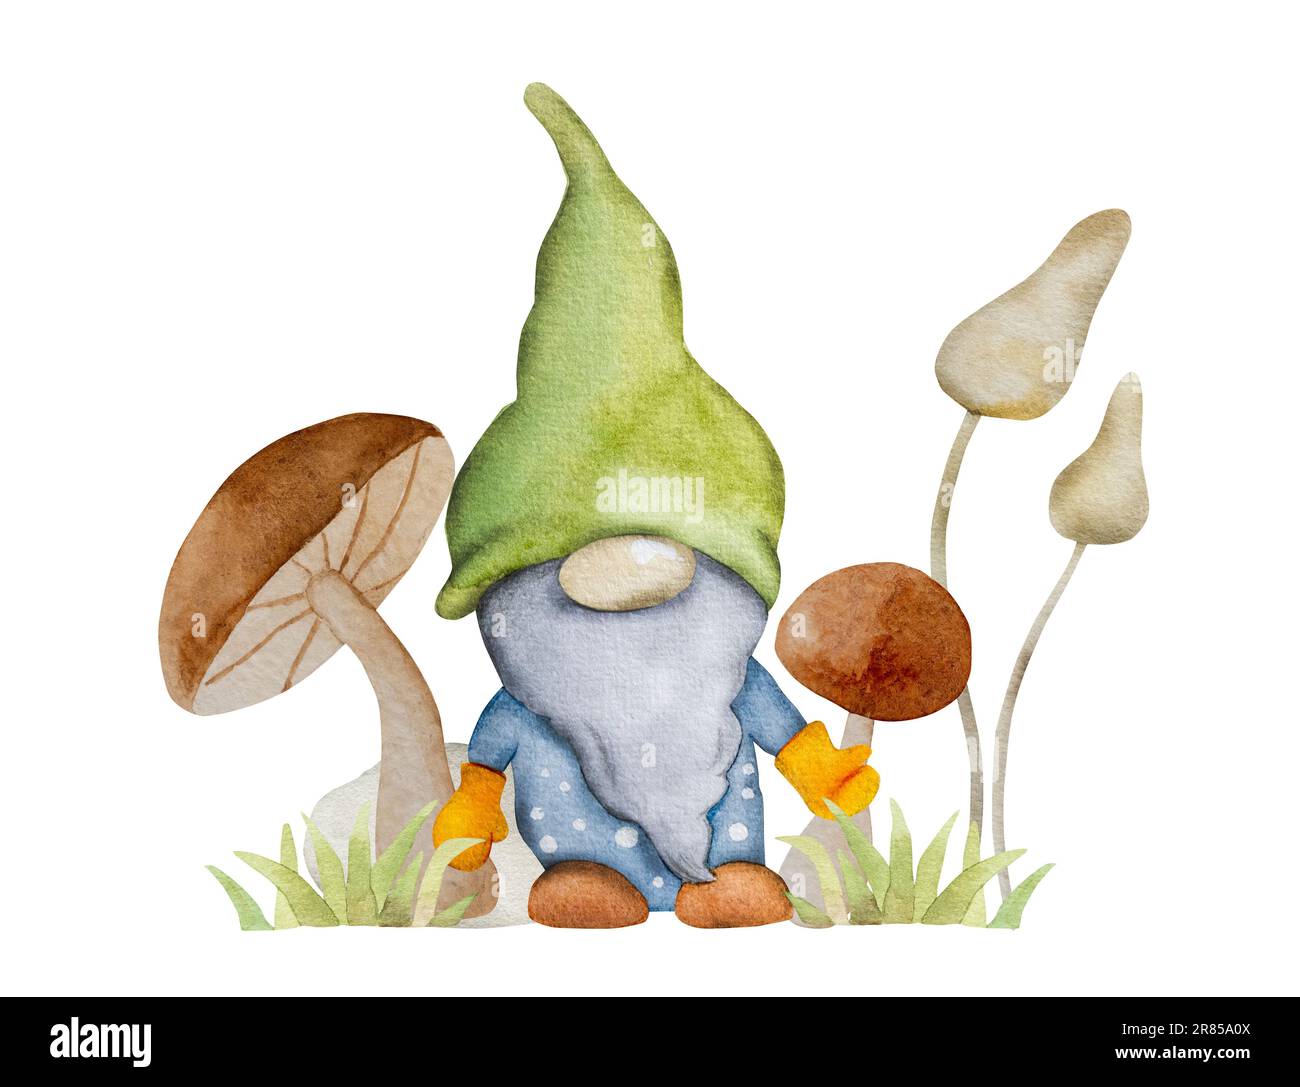 Nana forestale con funghi in pittura acquerello giardino. Personaggio fiabesco gnome con disegno agarico aquarelle per decorazione da cartolina Foto Stock